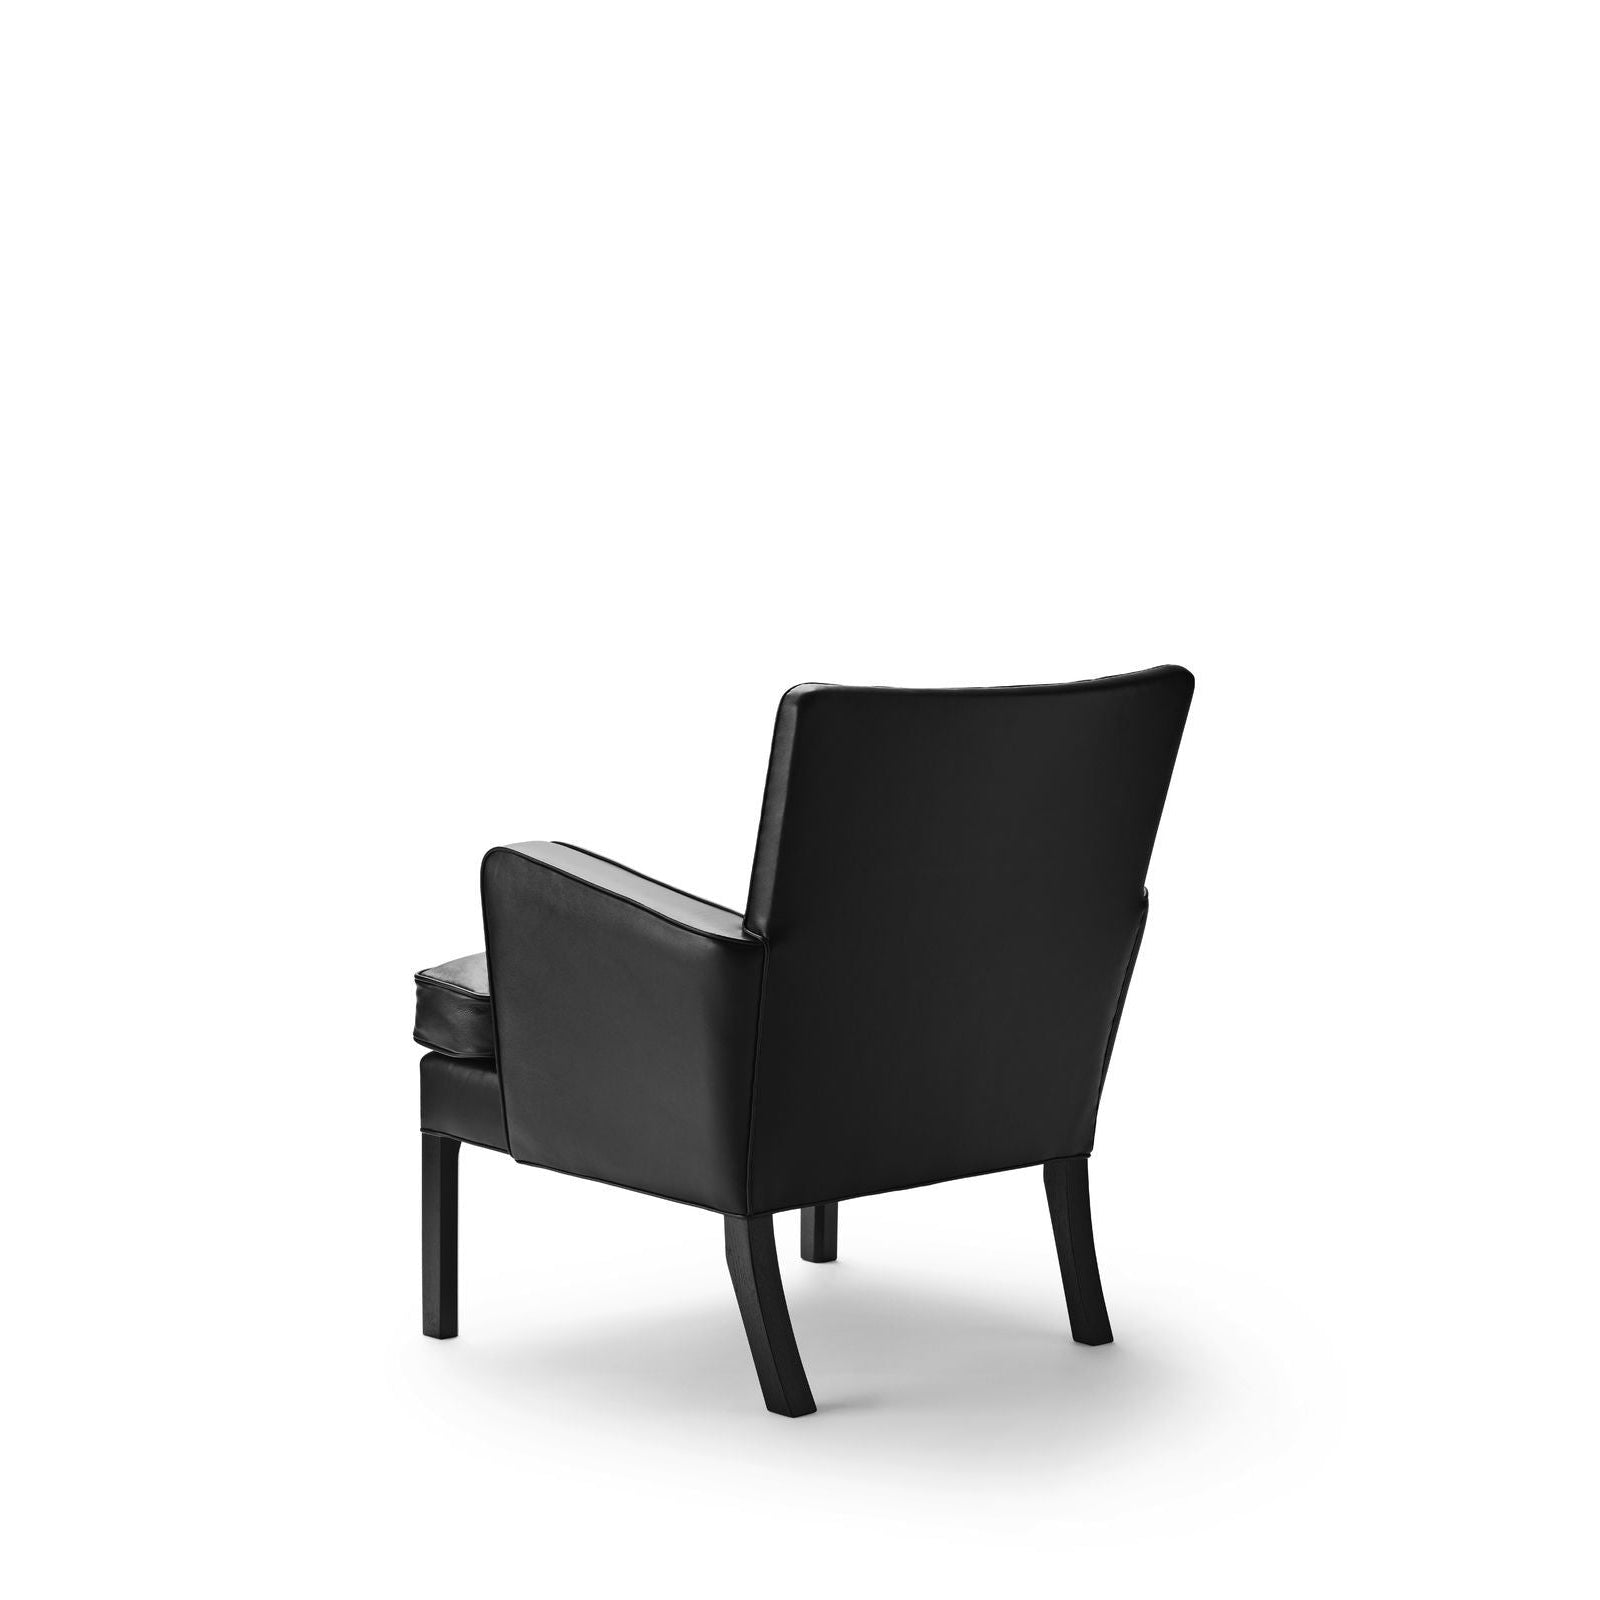 Carl Hansen KK53130 Chaise facile, chêne noir / cuir noir